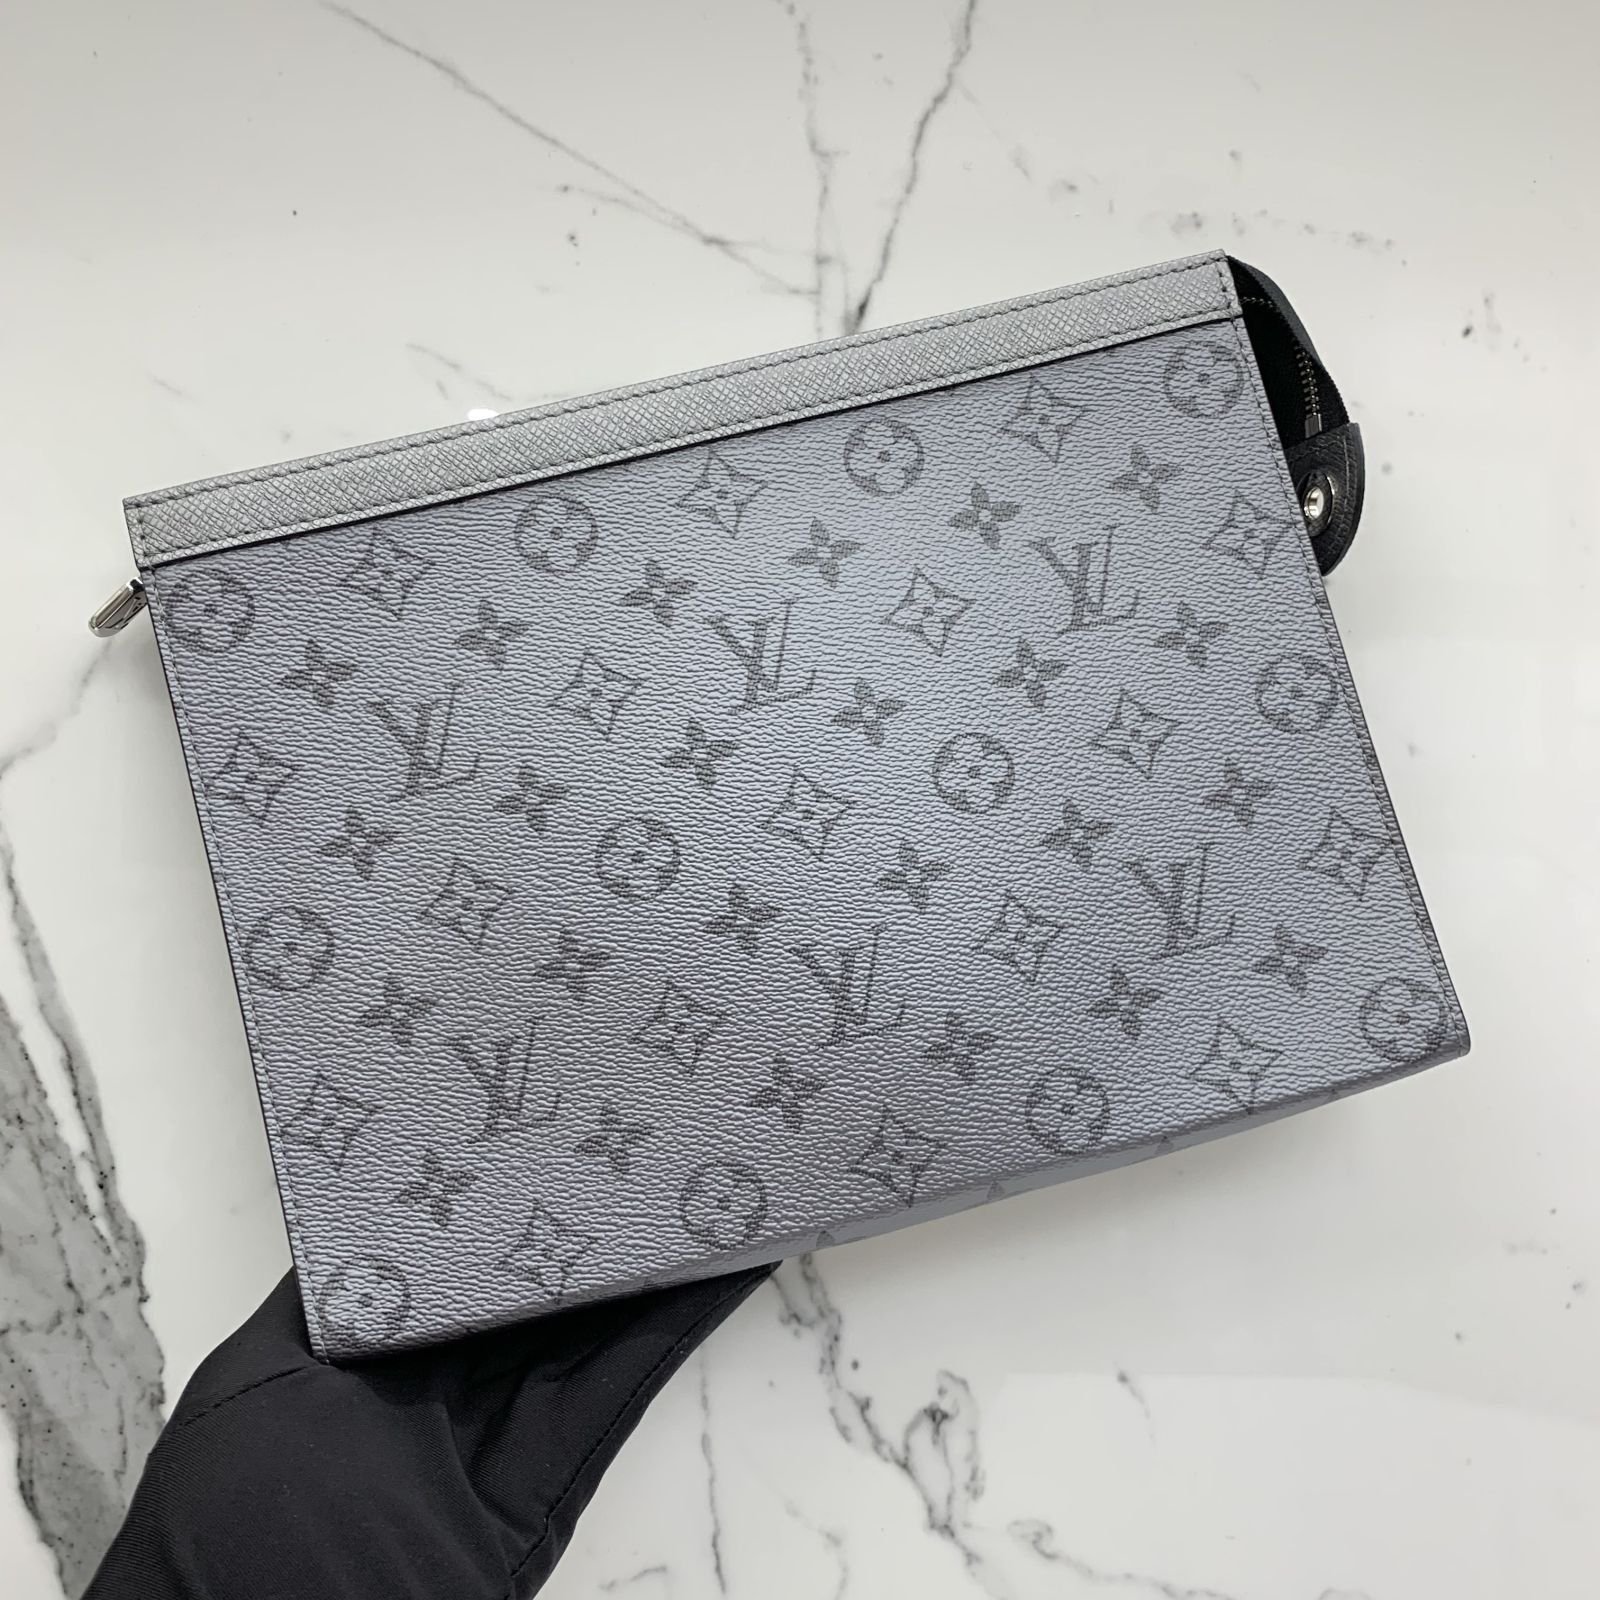 X18LOUISVUITTON POCHETTE VOYAGE Clutch Women Leather Handbags  Shoulder Bag Men Clutch Purse Satchel Wallet D23GS From Fameijin, $22.12